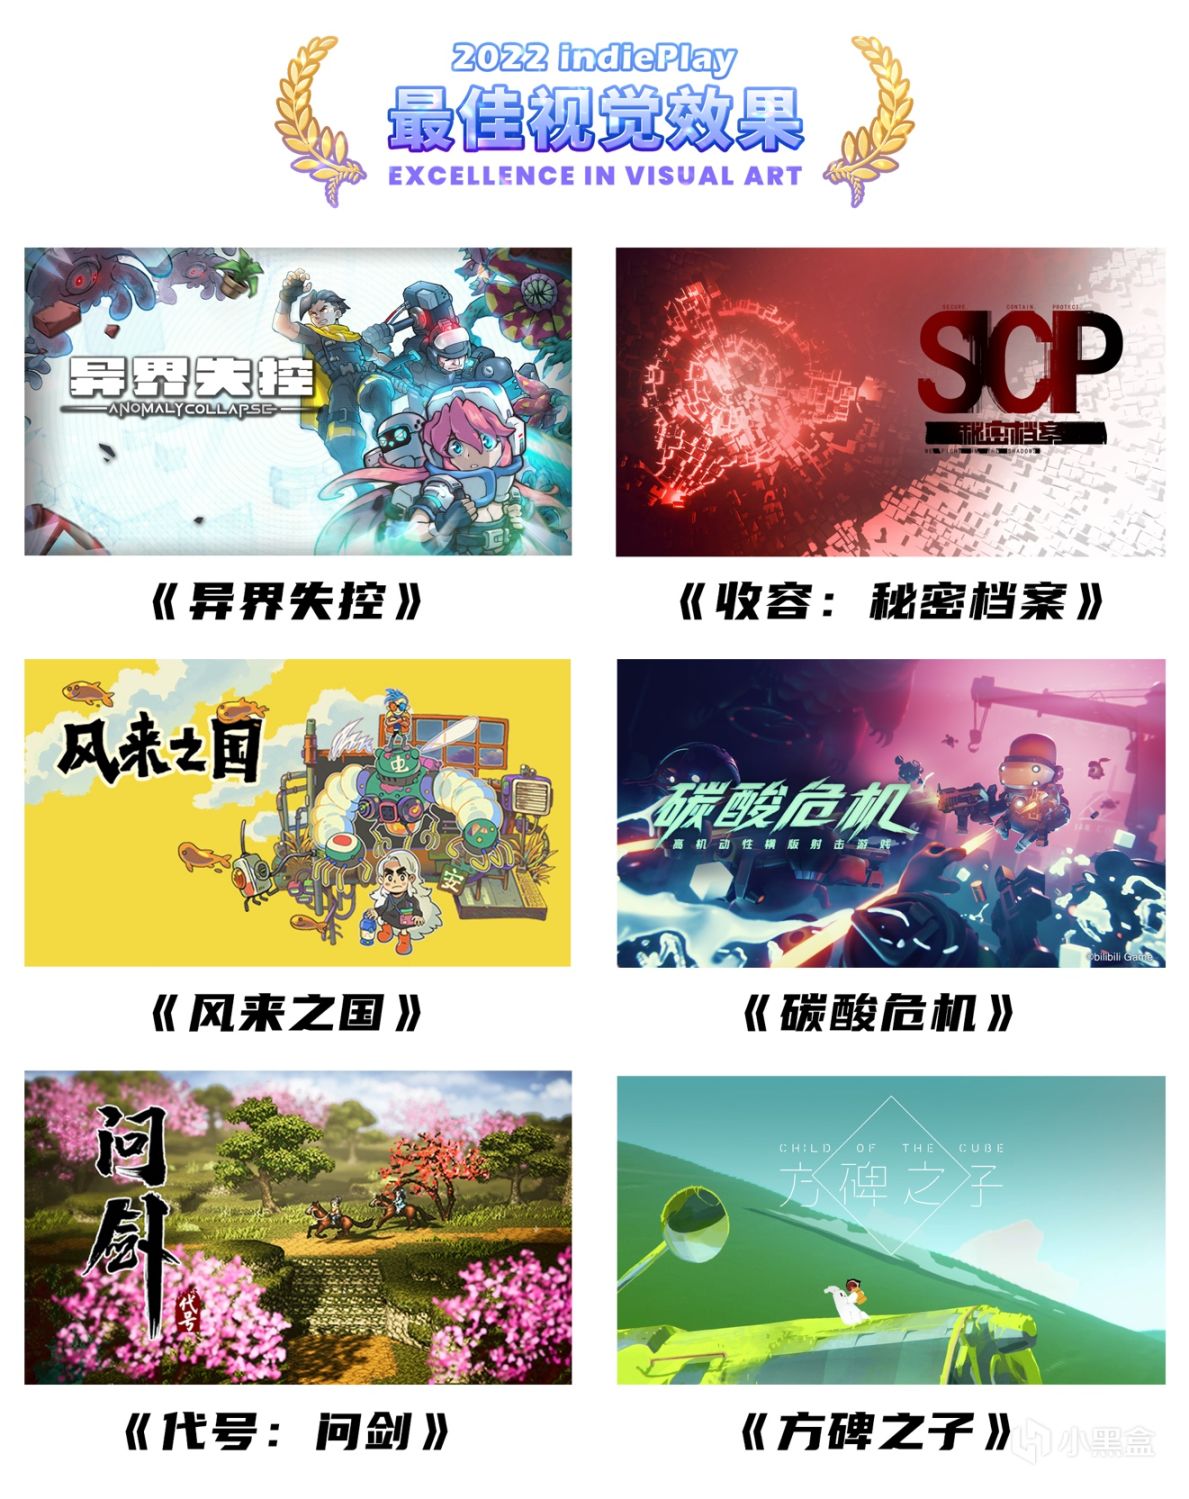 【PC游戏】2022indiePlay中国独立游戏大赛入围名单公布！11月13日公布各奖项最终归属-第7张